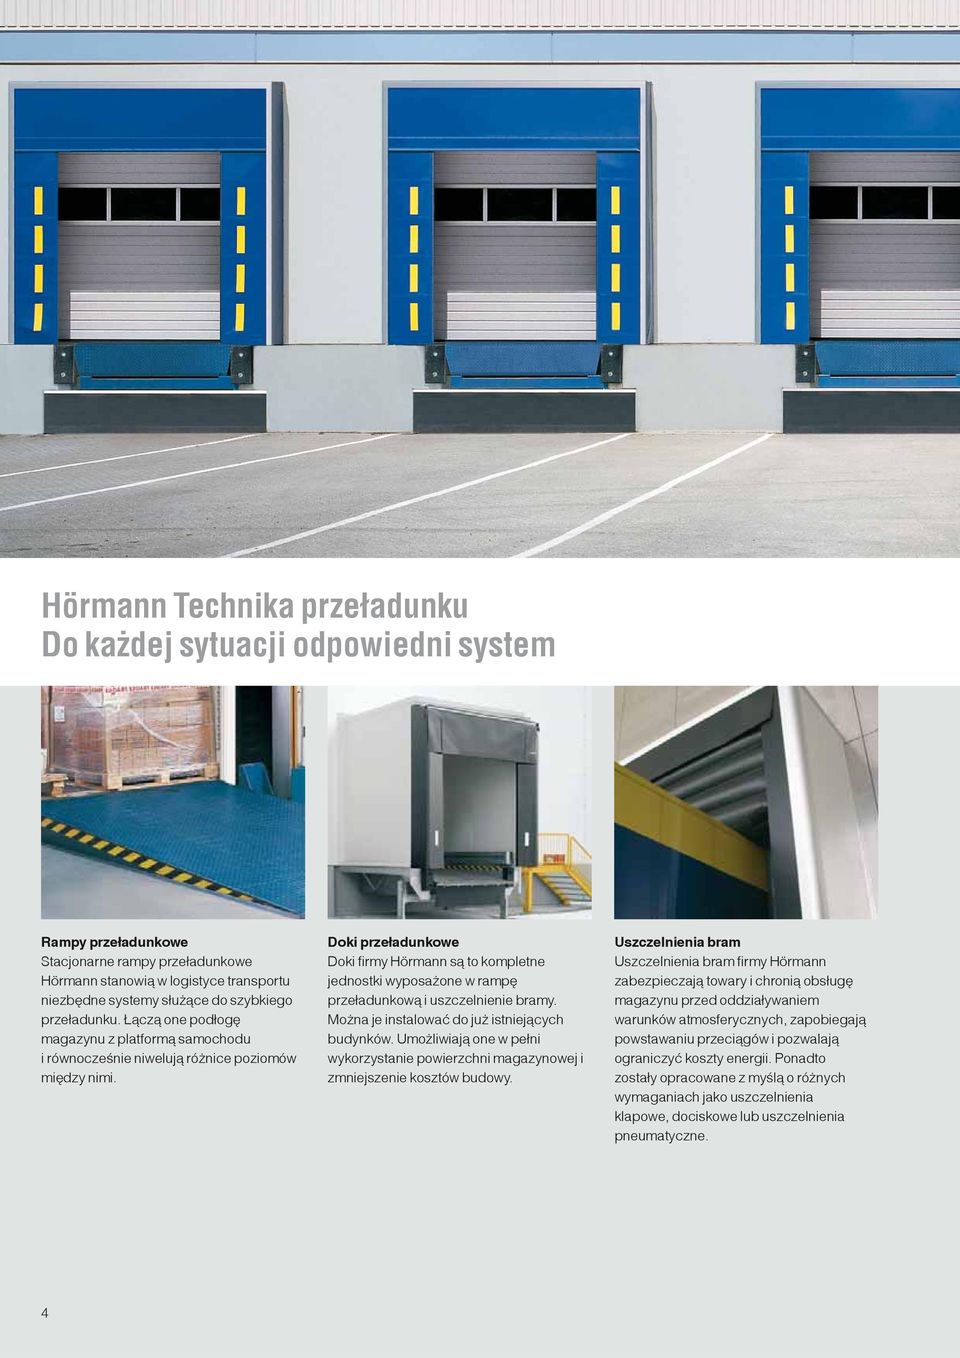 Doki przeładunkowe Doki firmy Hörmann są to kompletne jednostki wyposażone w rampę przeładunkową i uszczelnienie bramy. Można je instalować do już istniejących budynków.